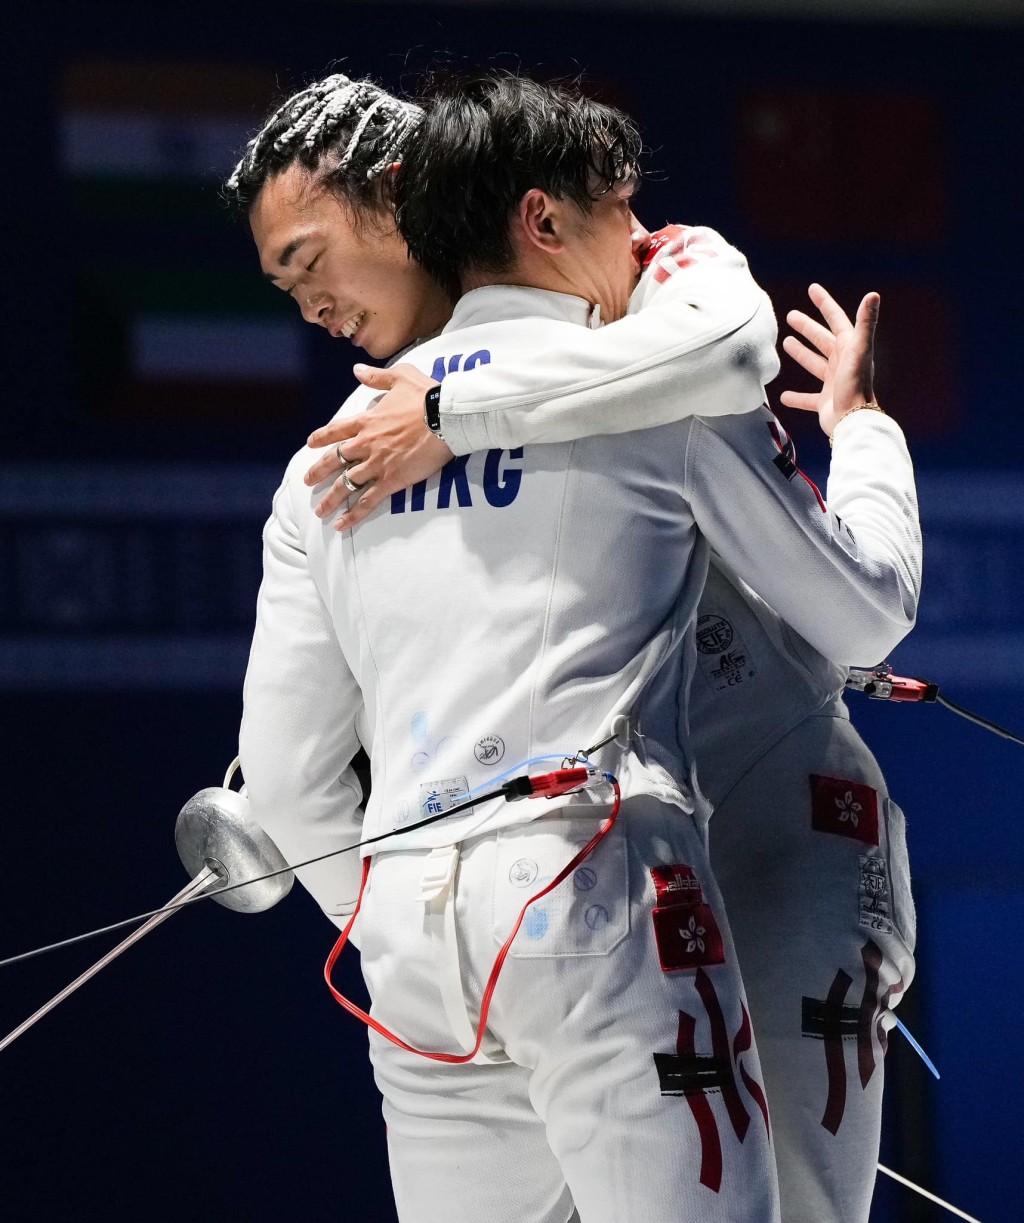 历史性的一刻: 2位男重代表在赛后怎少得这识英雄重英雄的抱抱呢? FIE FB 图